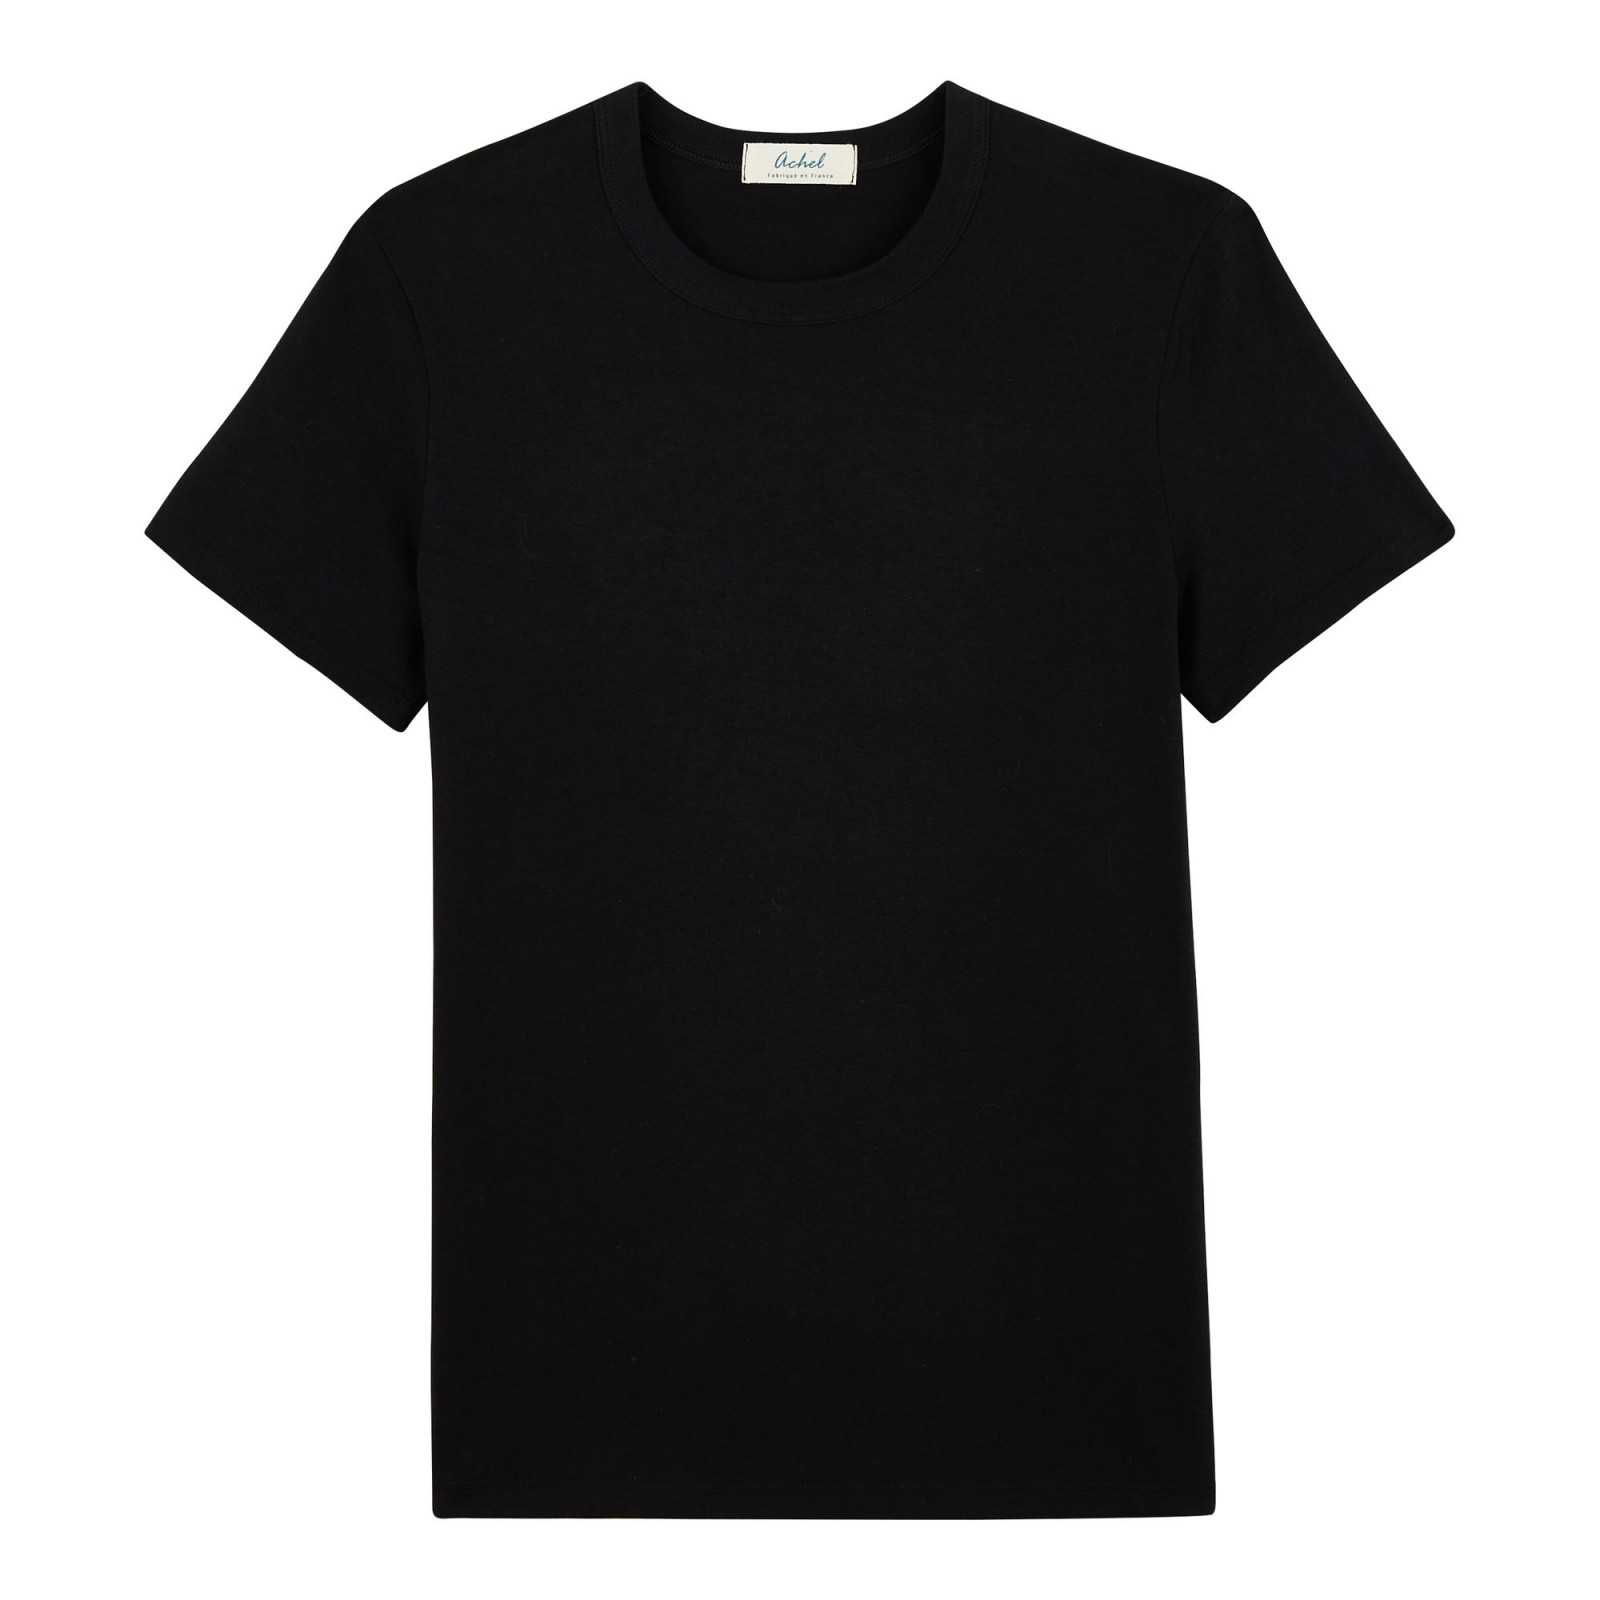 Le t-shirt noir basique en coton Bio, éthique et Made in France